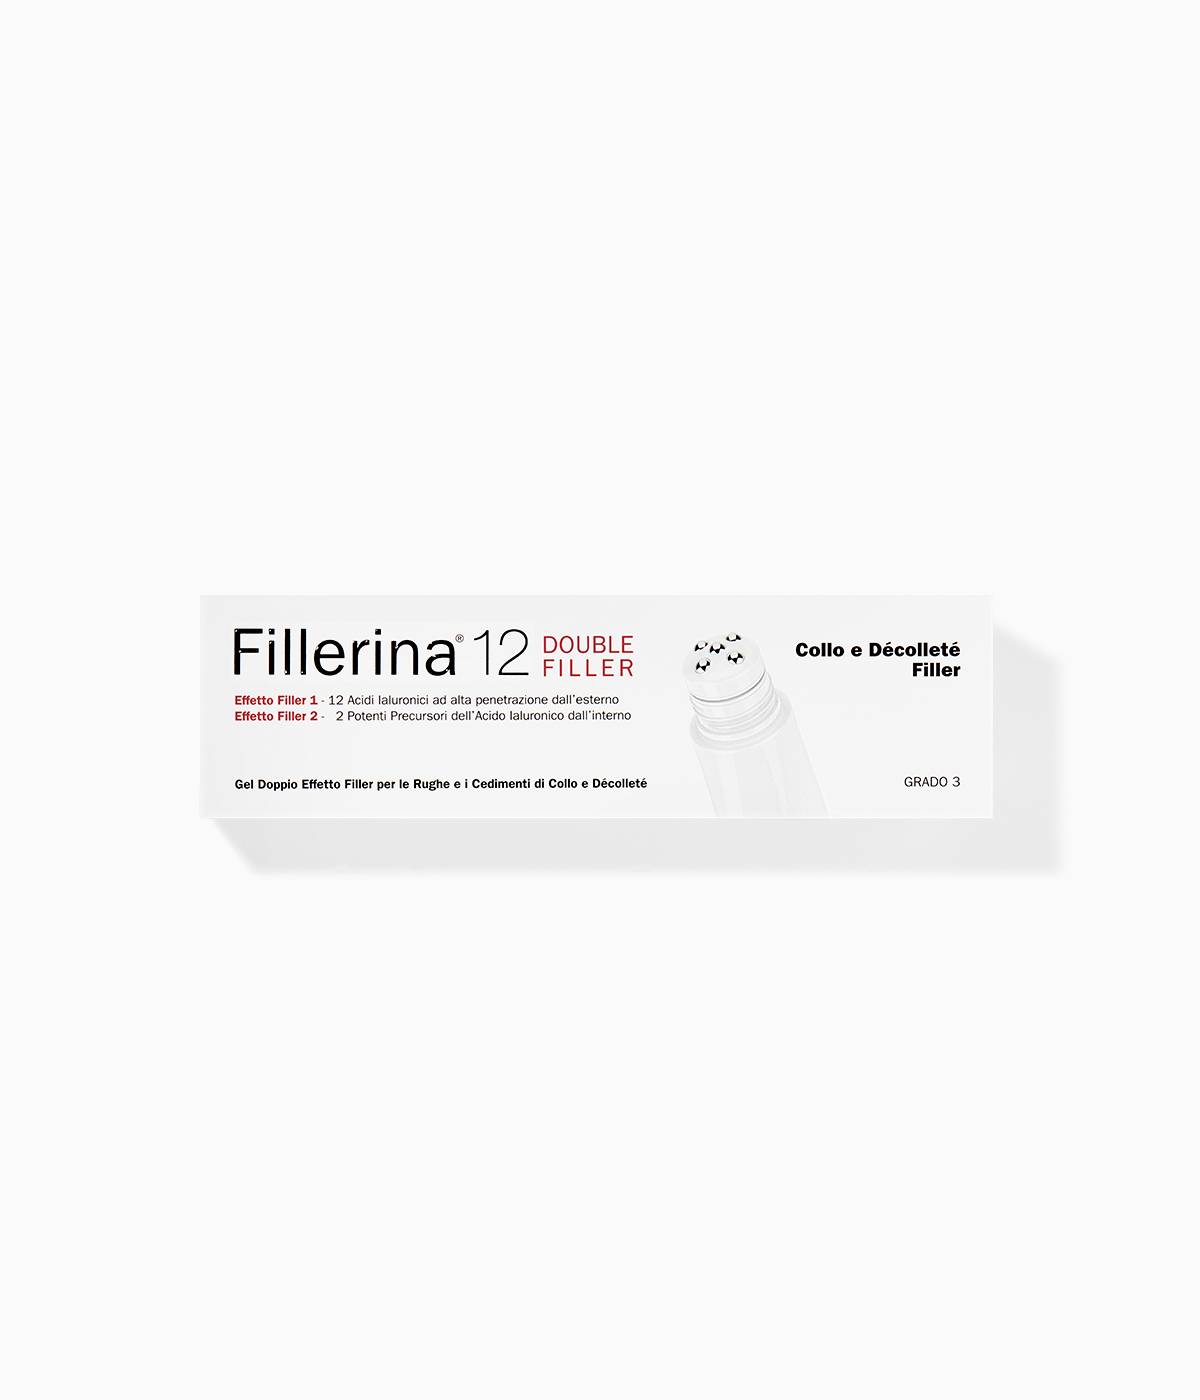 Labo-fillerina-12-double-filler-gel-neck-decollete-filler-anti-wrinkle-toning-pharmaflorence